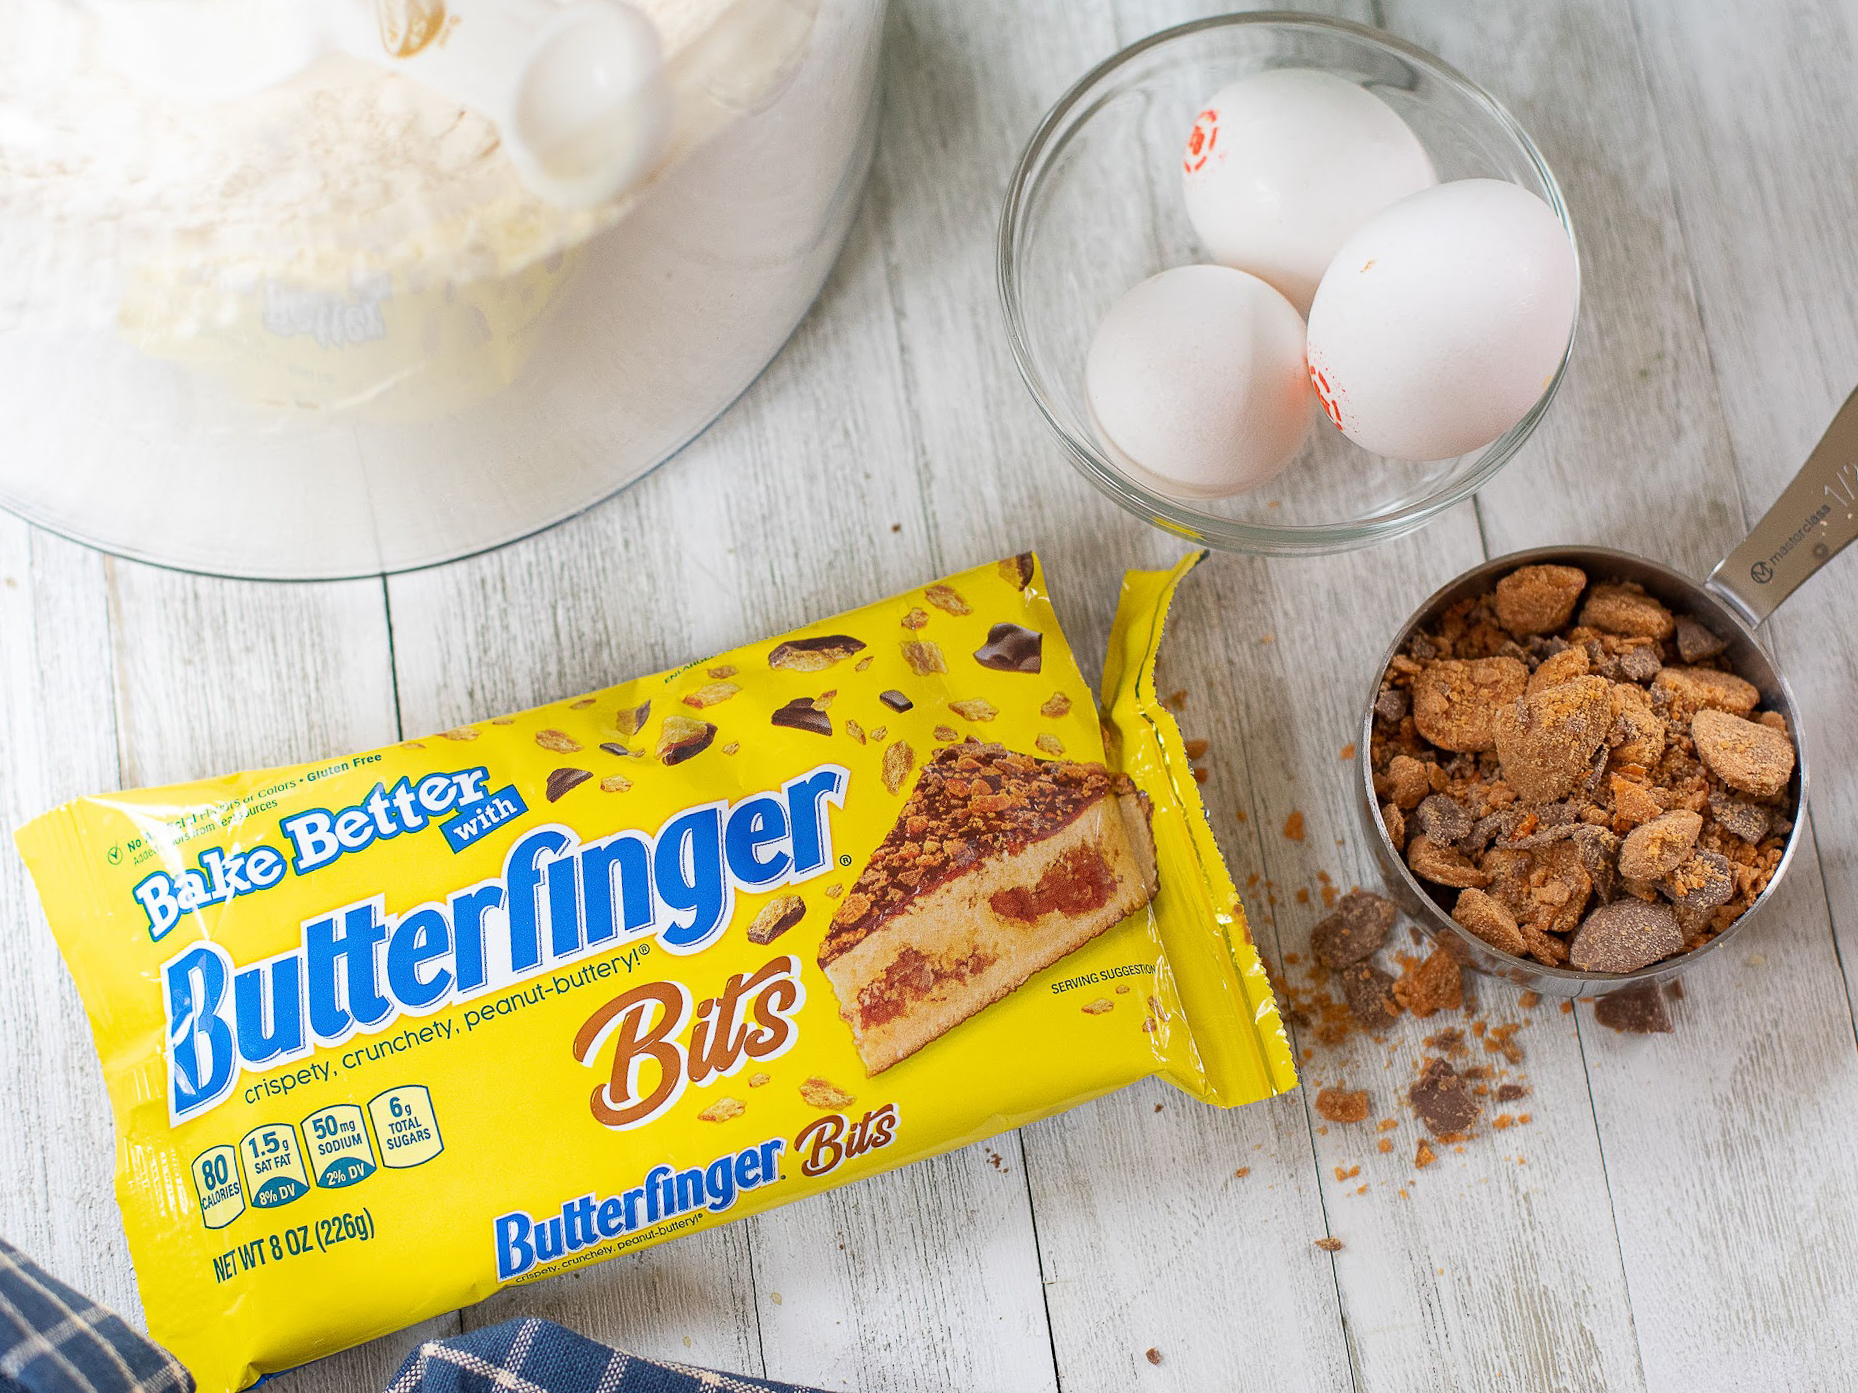 Butterfinger Baking Bits Just $1.75 At Kroger